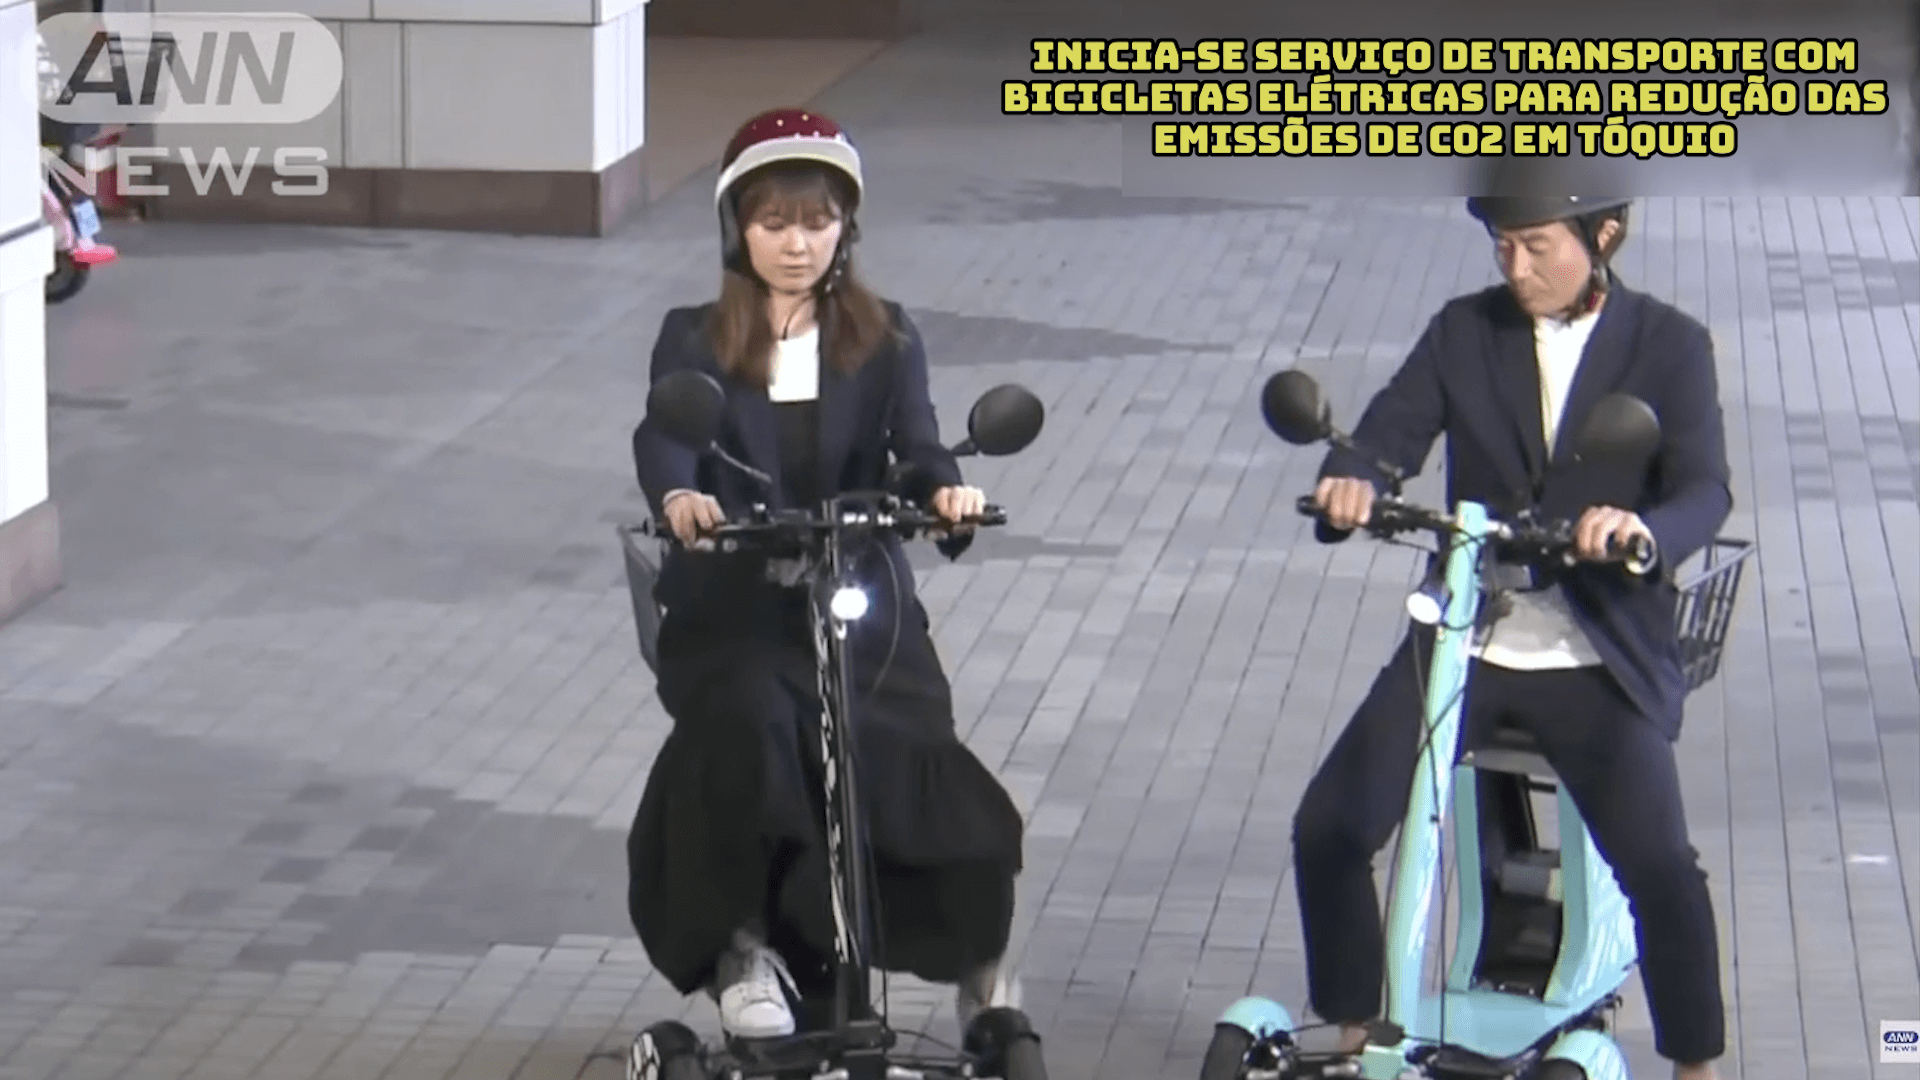 Inicia-se serviço de transporte com bicicletas elétricas para redução das emissões de CO2 em Tóquio 